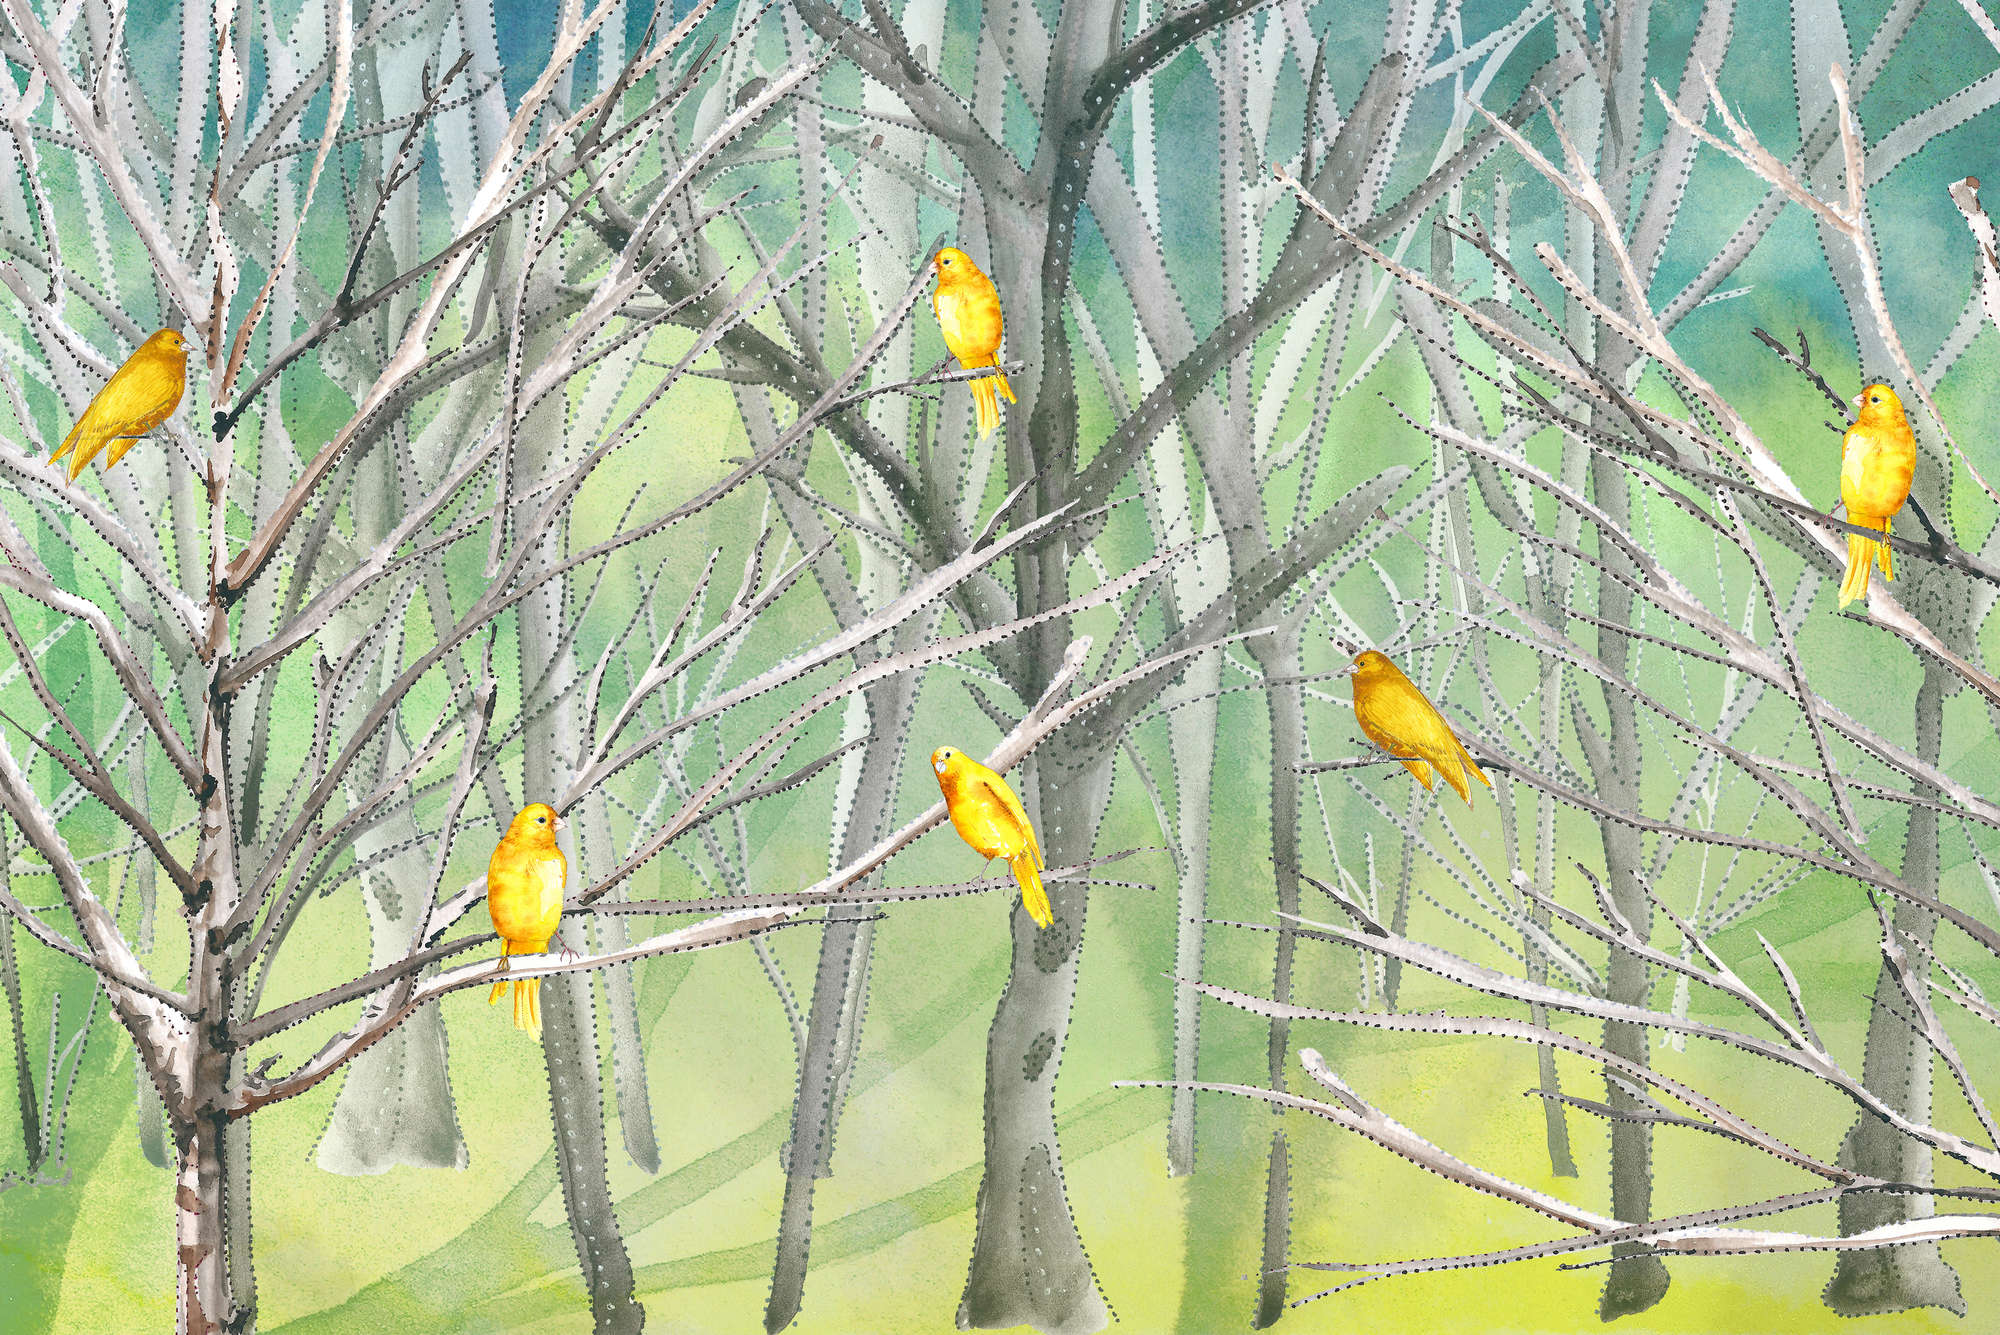             Papel pintado de bosque con pájaros en azul y amarillo sobre vellón liso perlado
        